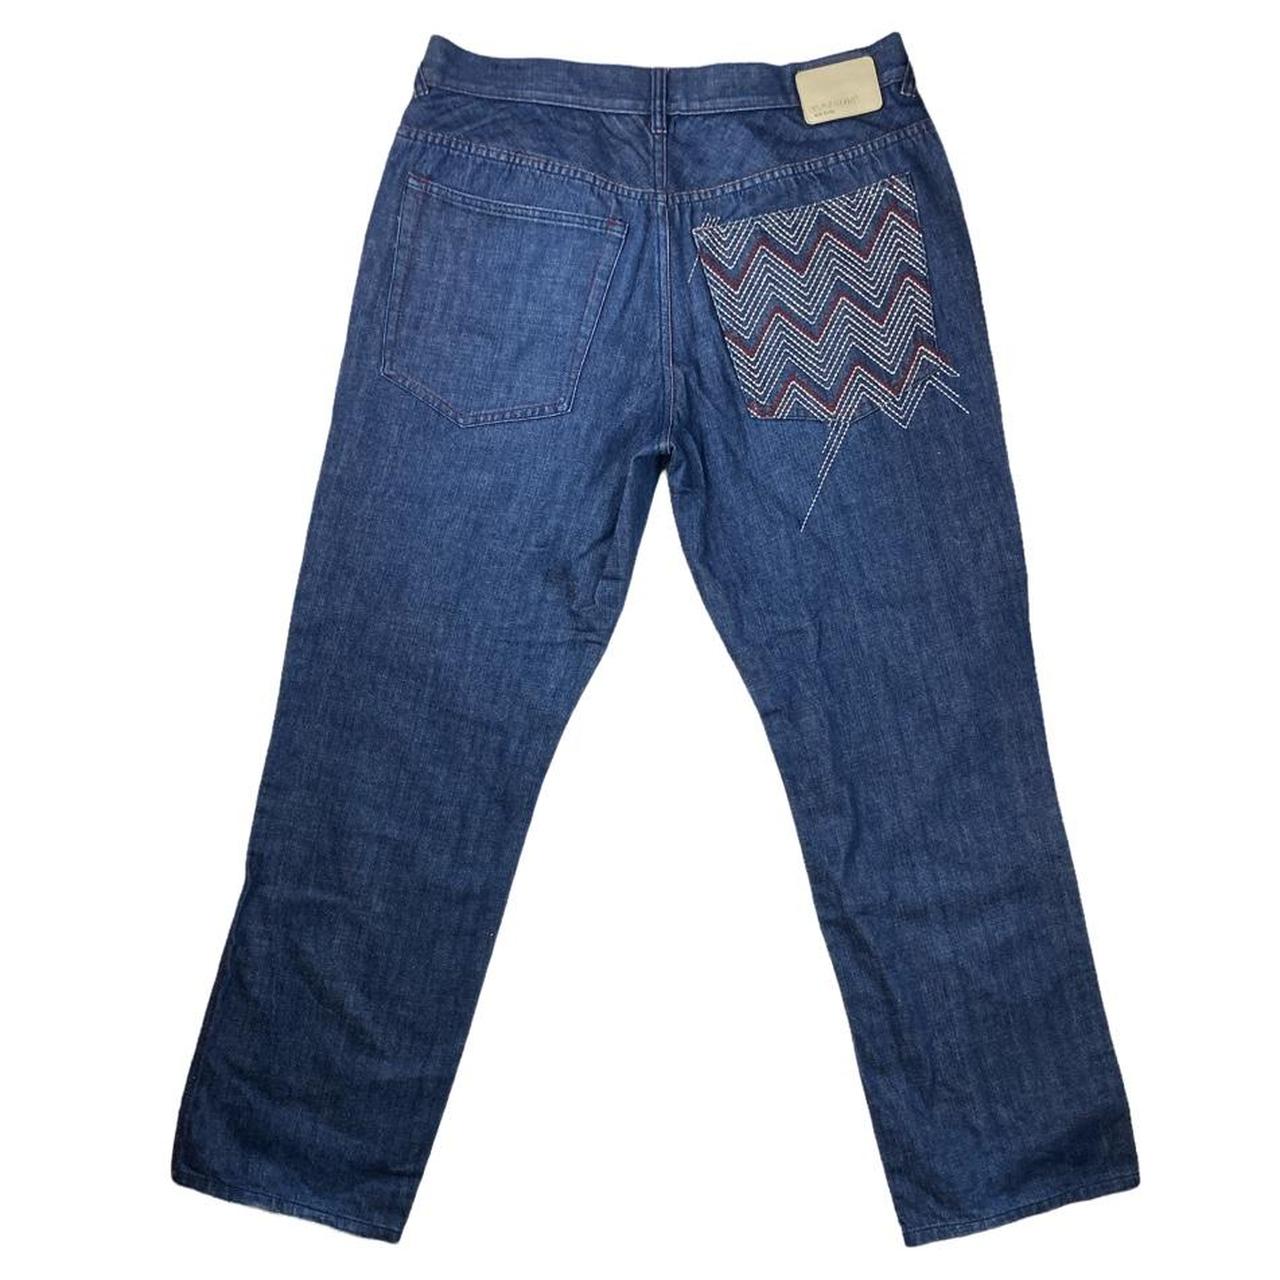 👖 🦏 Vintage Ecko Unltd Embroidered Navy Blue Jeans... - Depop